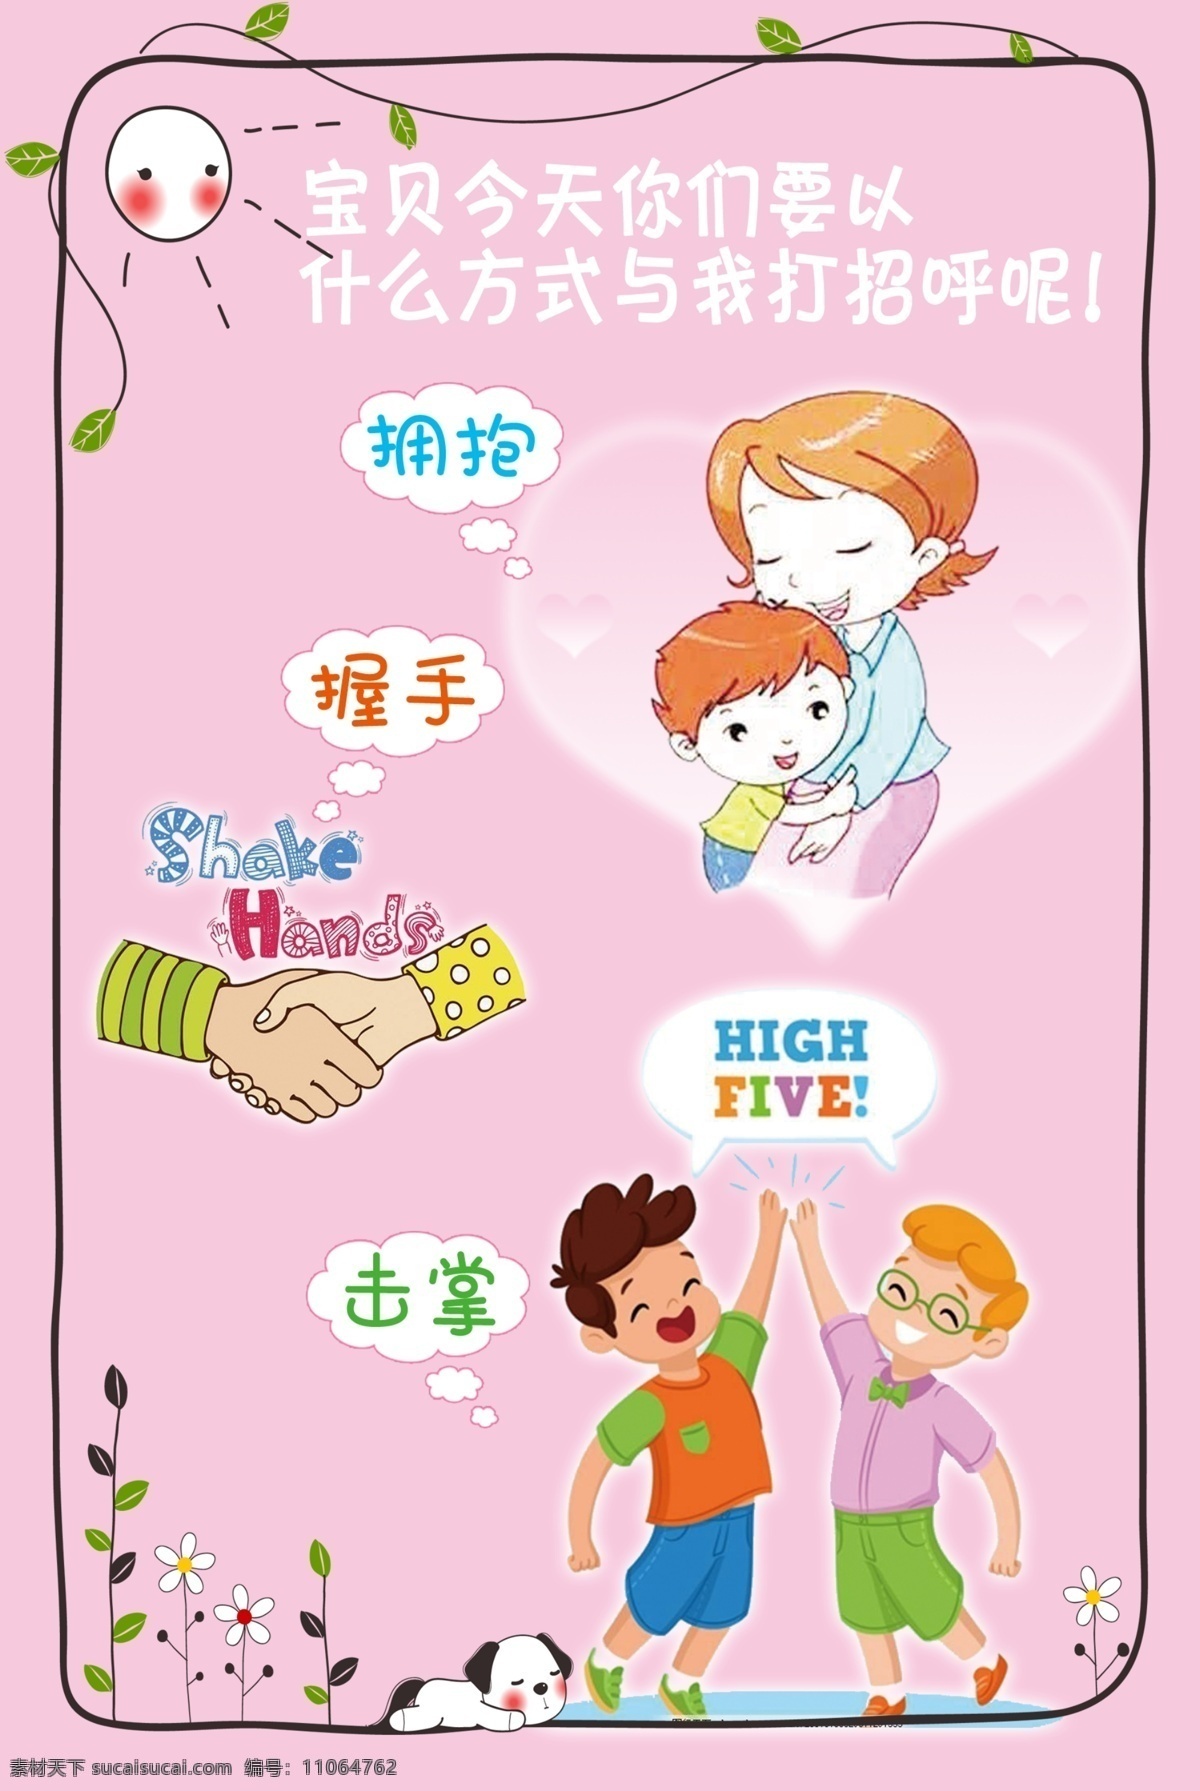 宝贝今天你们 幼儿园展板 海报 幼儿园海报 拥抱 握手 击掌 礼貌用语 粉色海报